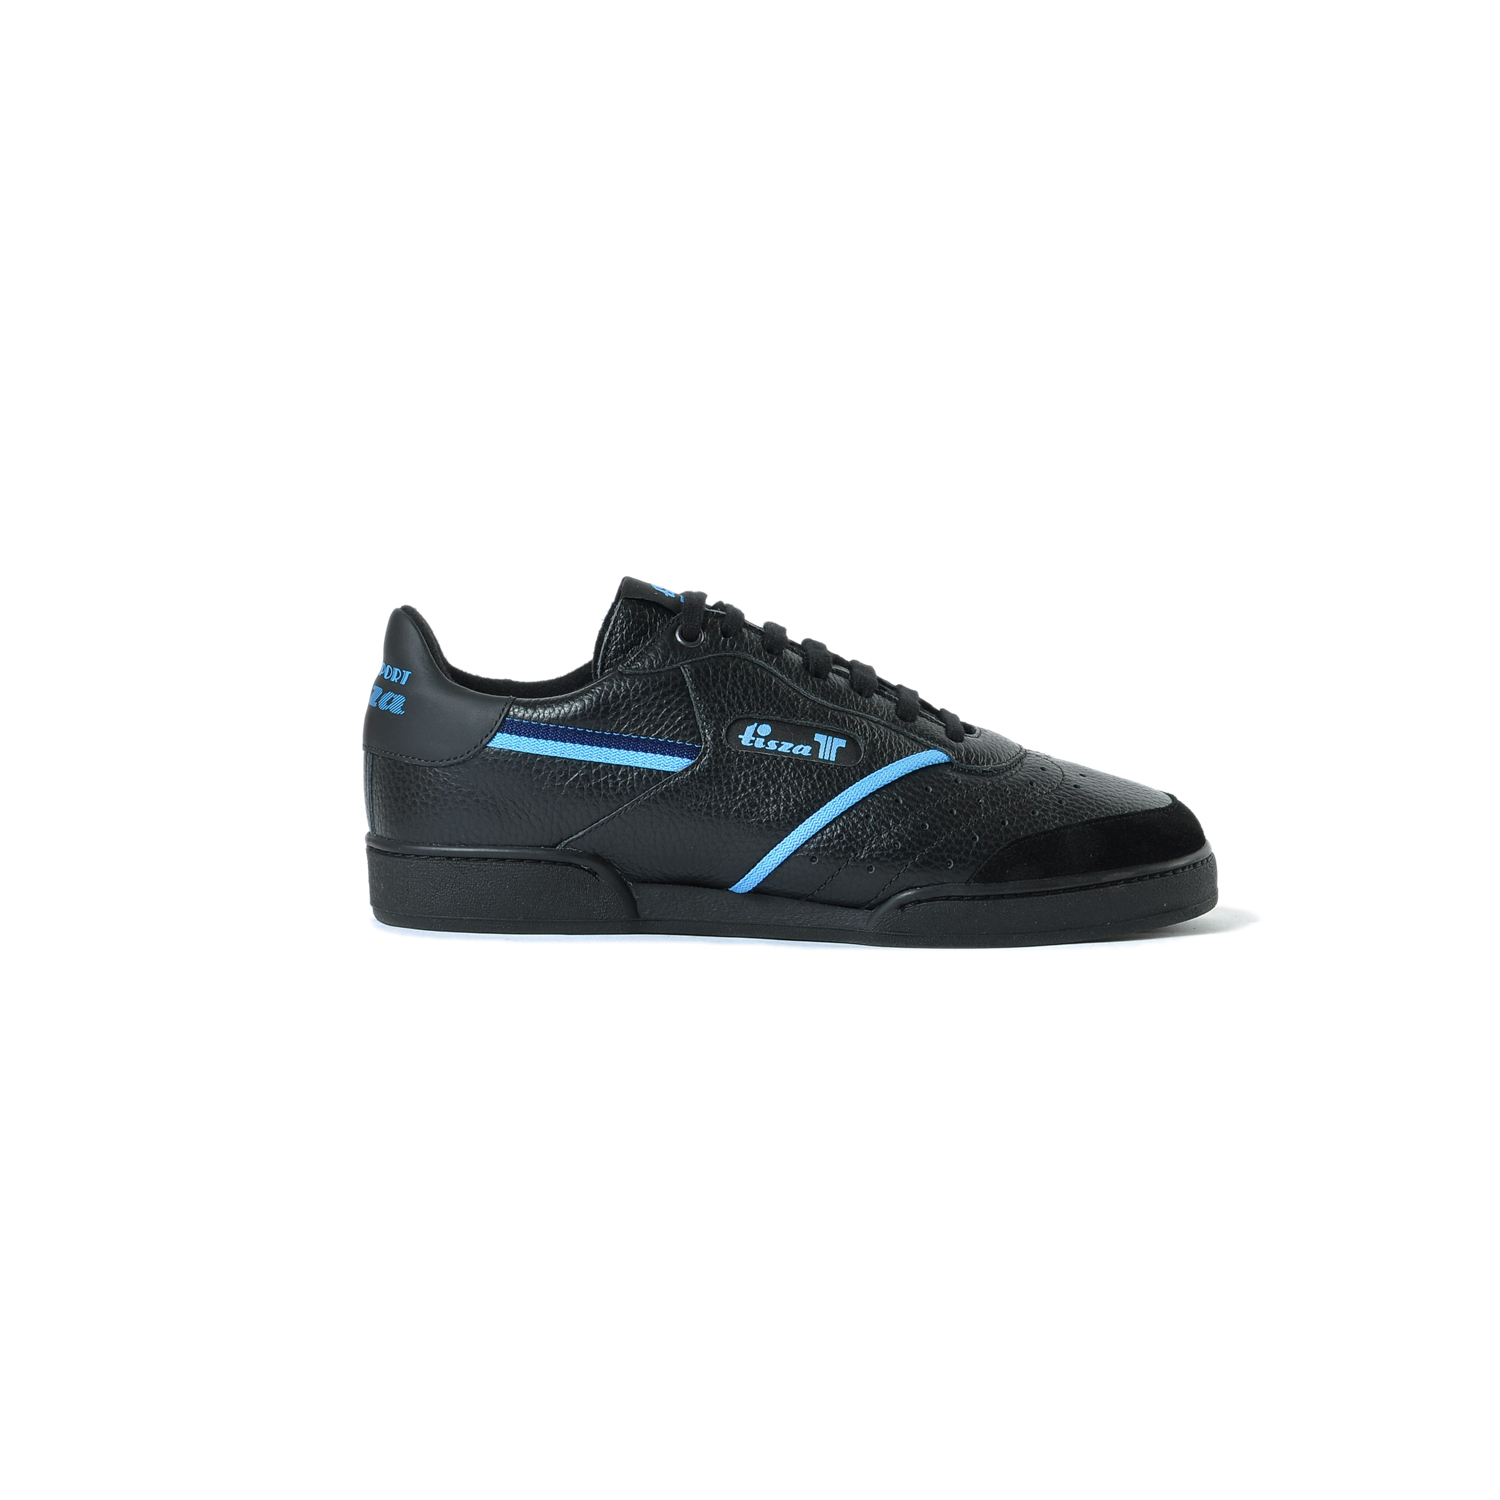 Tisza shoes - Sport - Black-blue